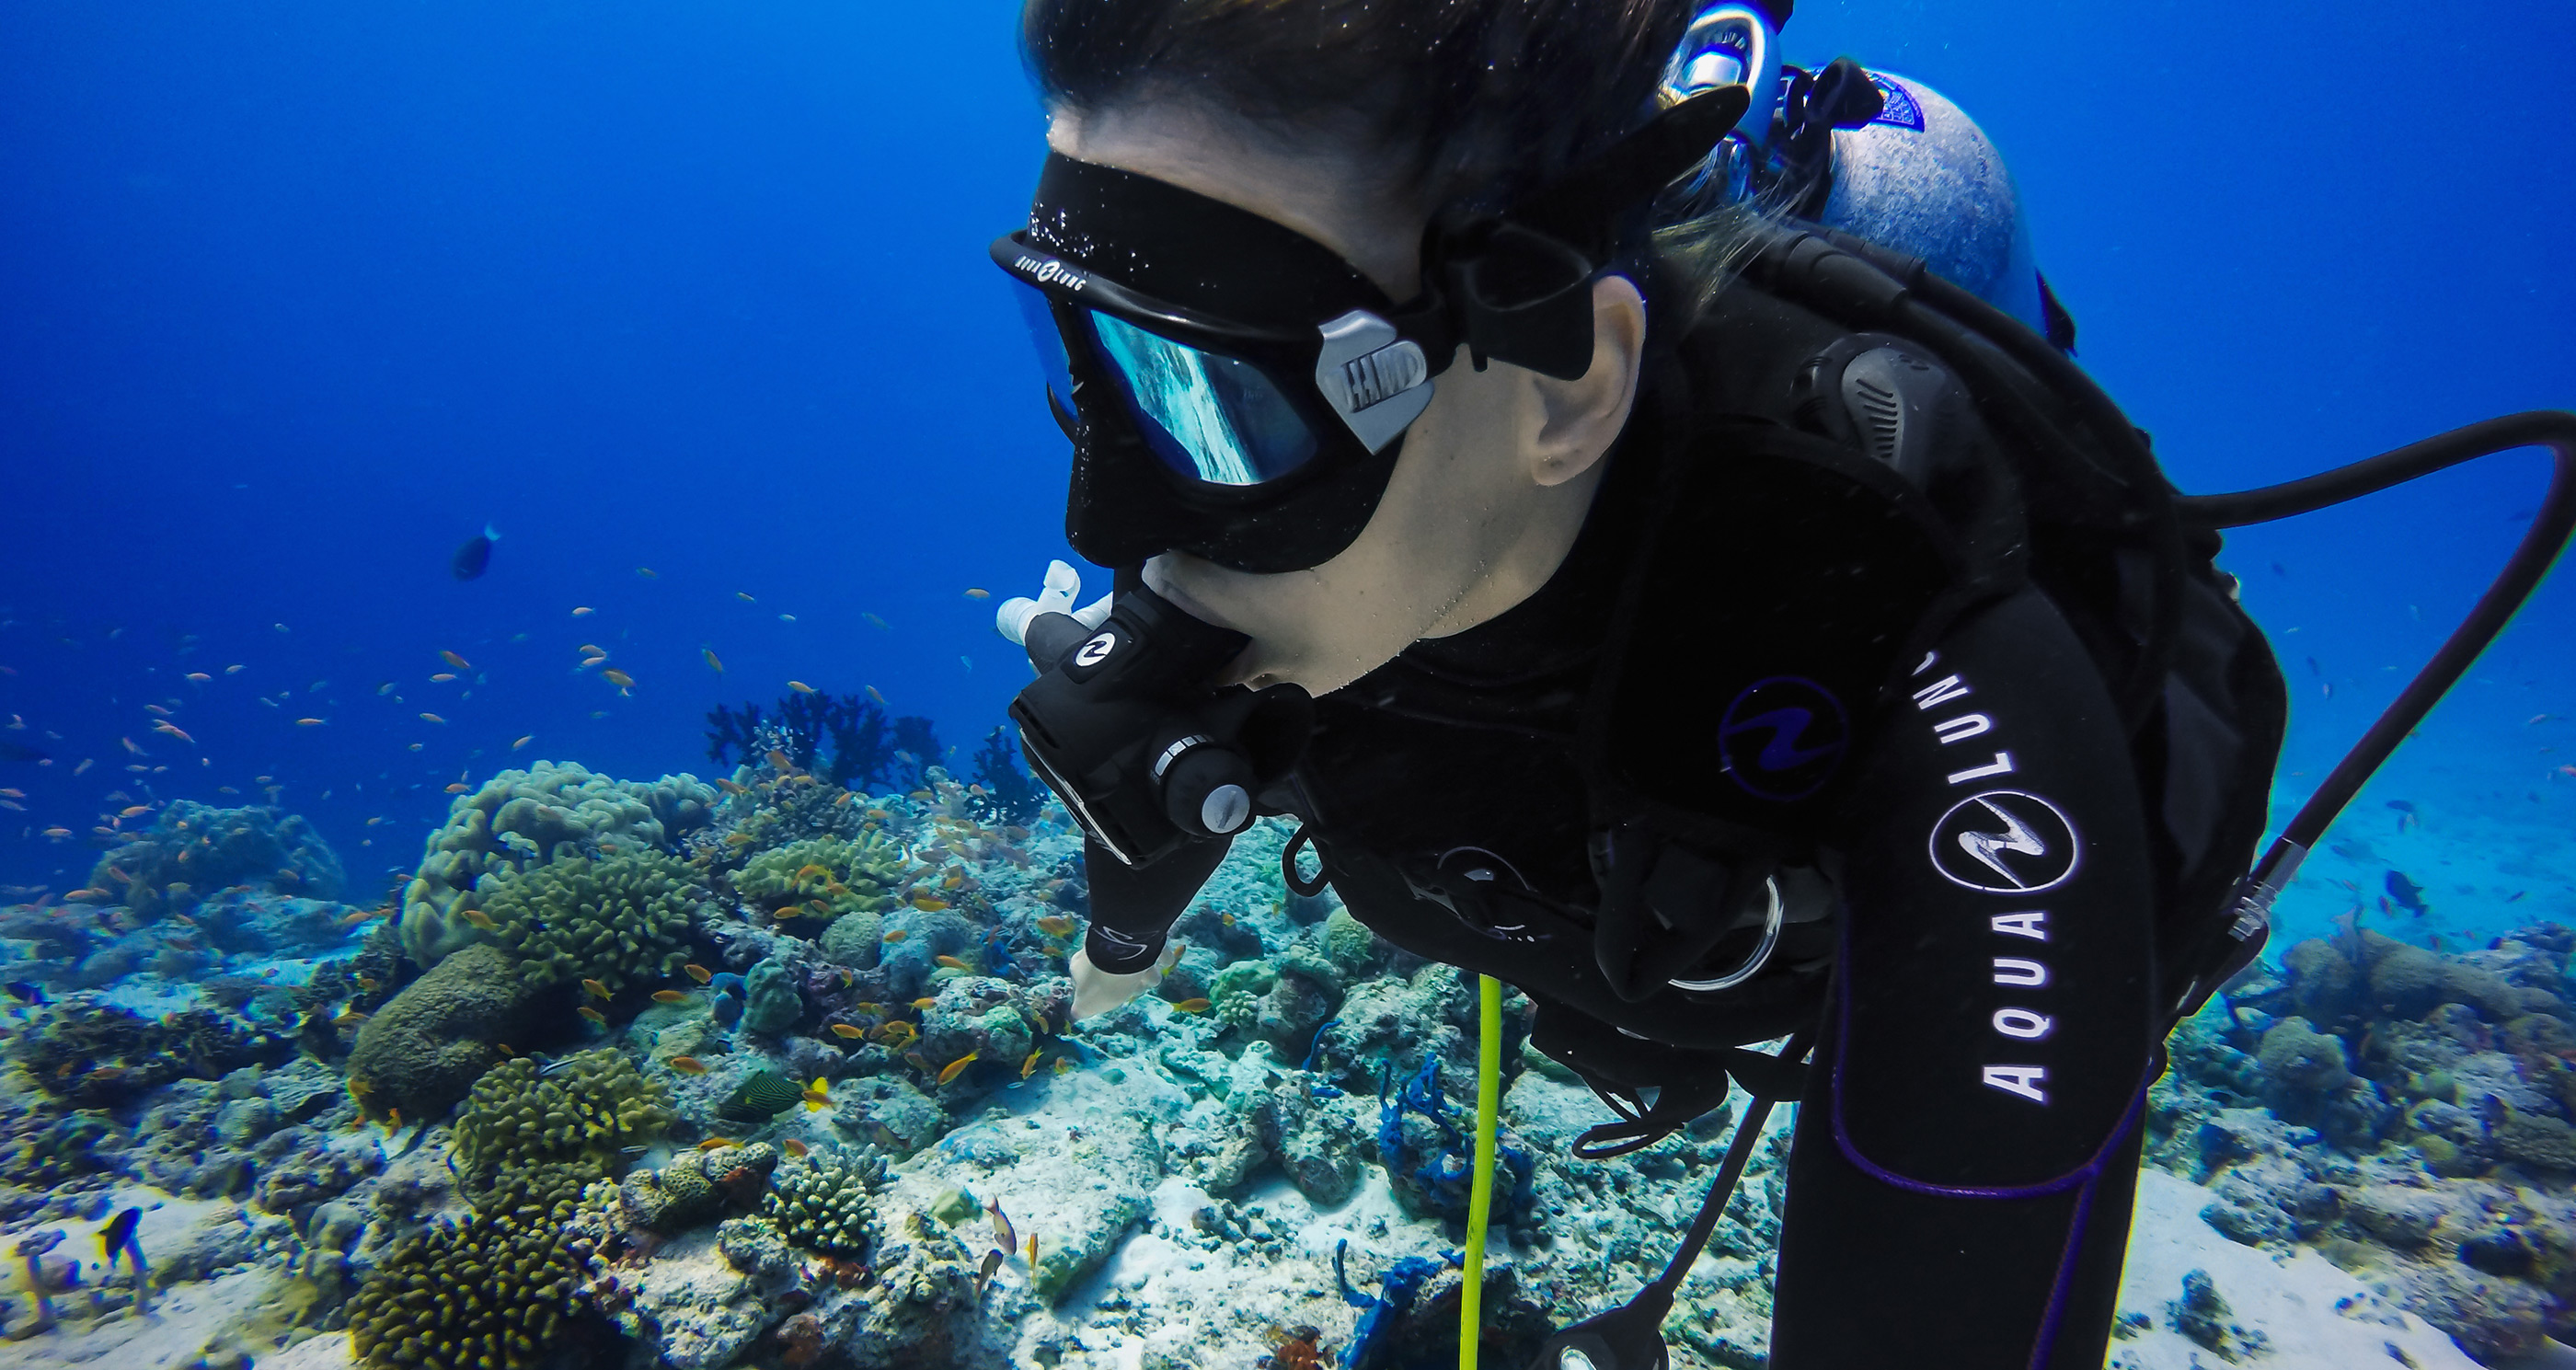 GoPro - Green Water Dive Filter for Super Suit diving case - TEK 